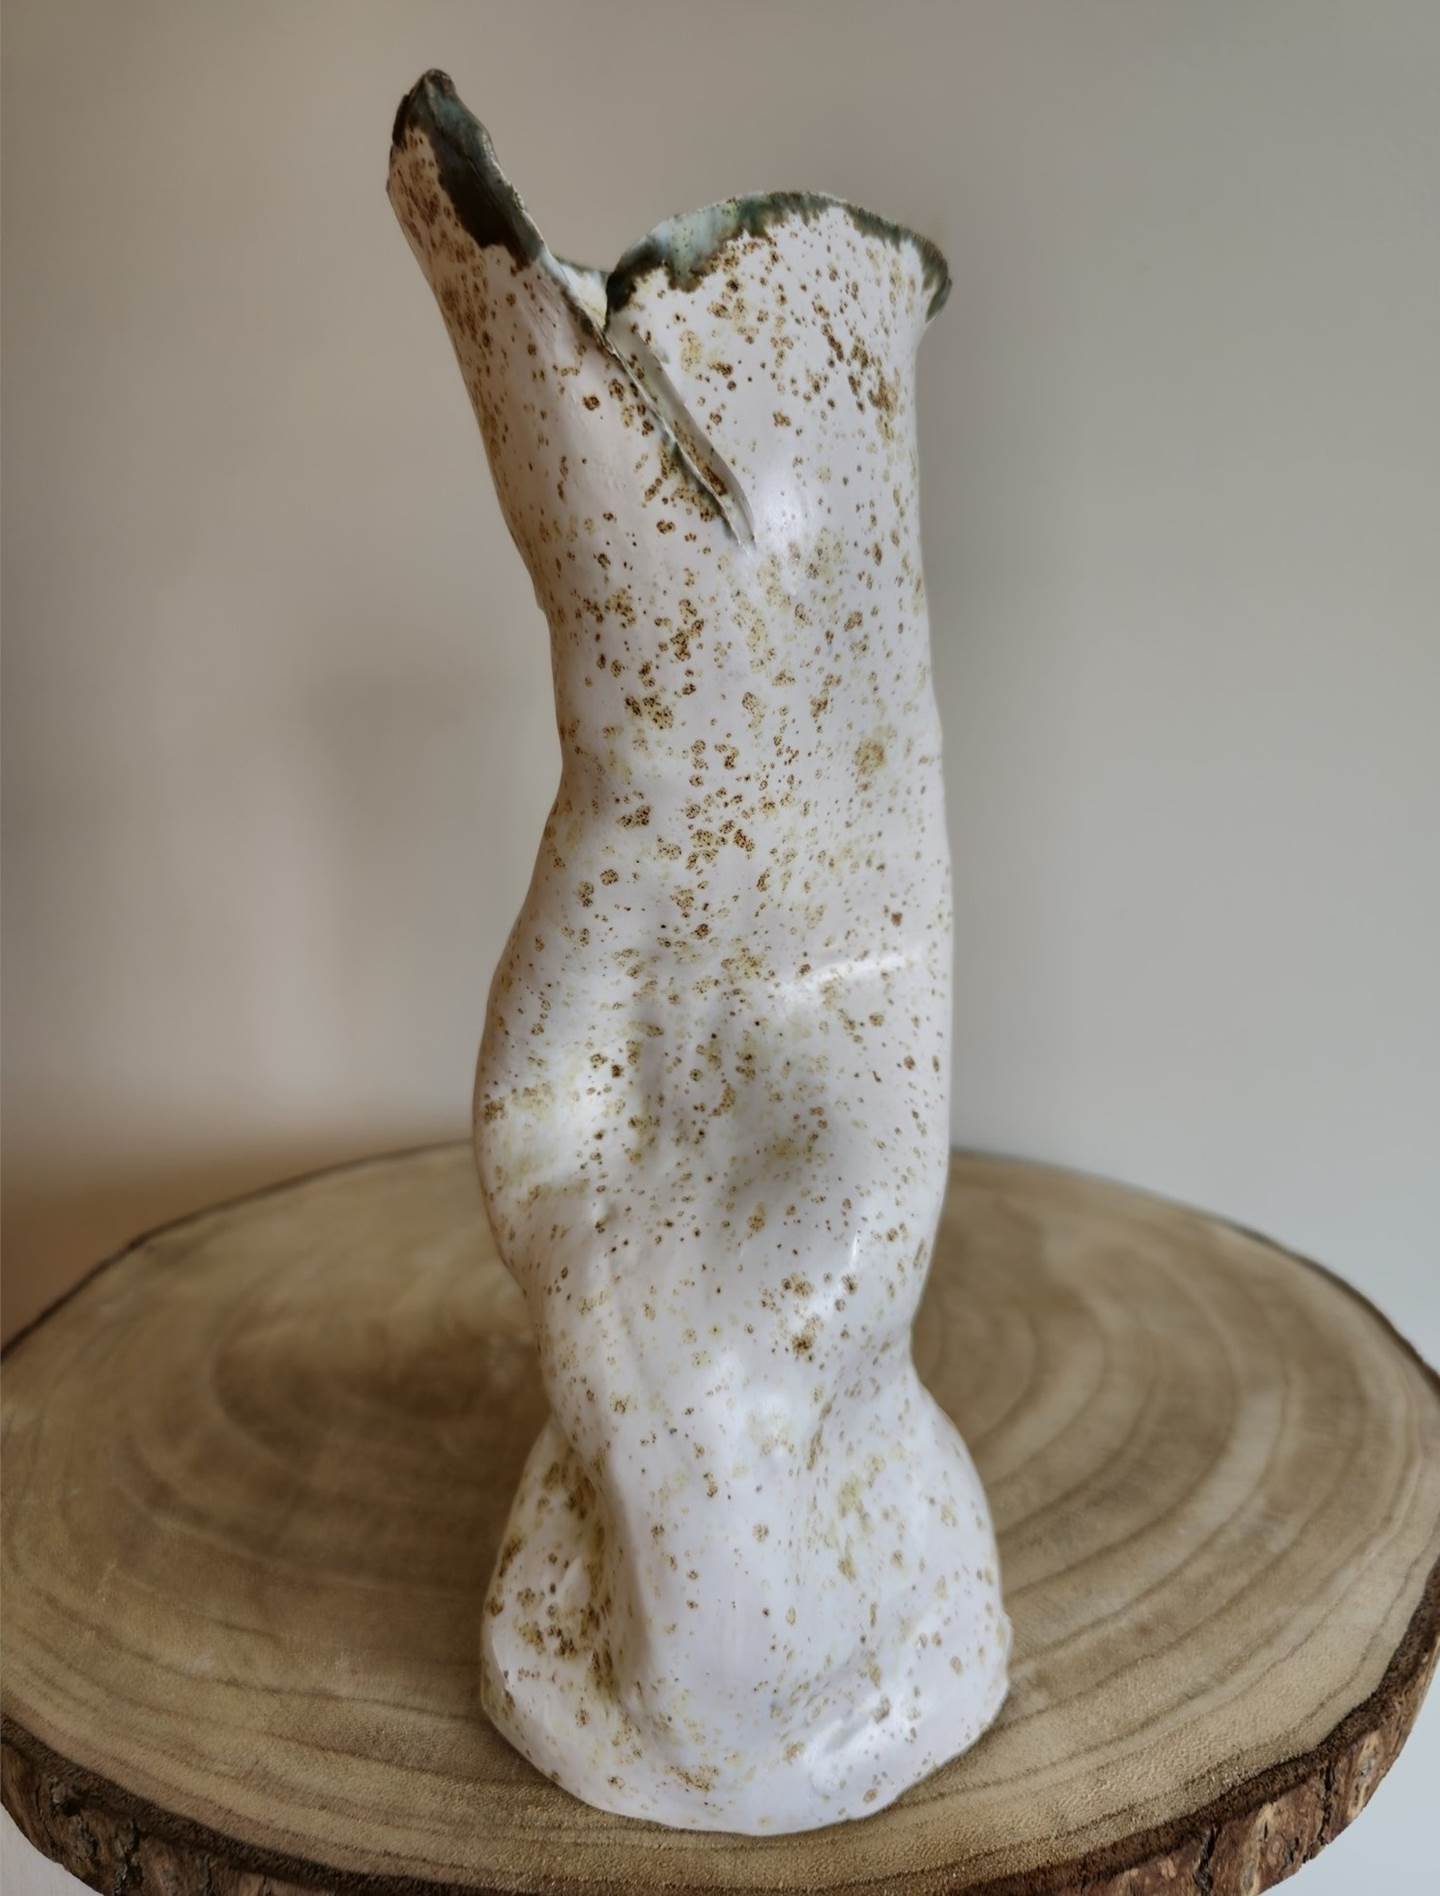 Vase III, Escultura Cerâmica Figura Humana original por Ana Sousa Santos